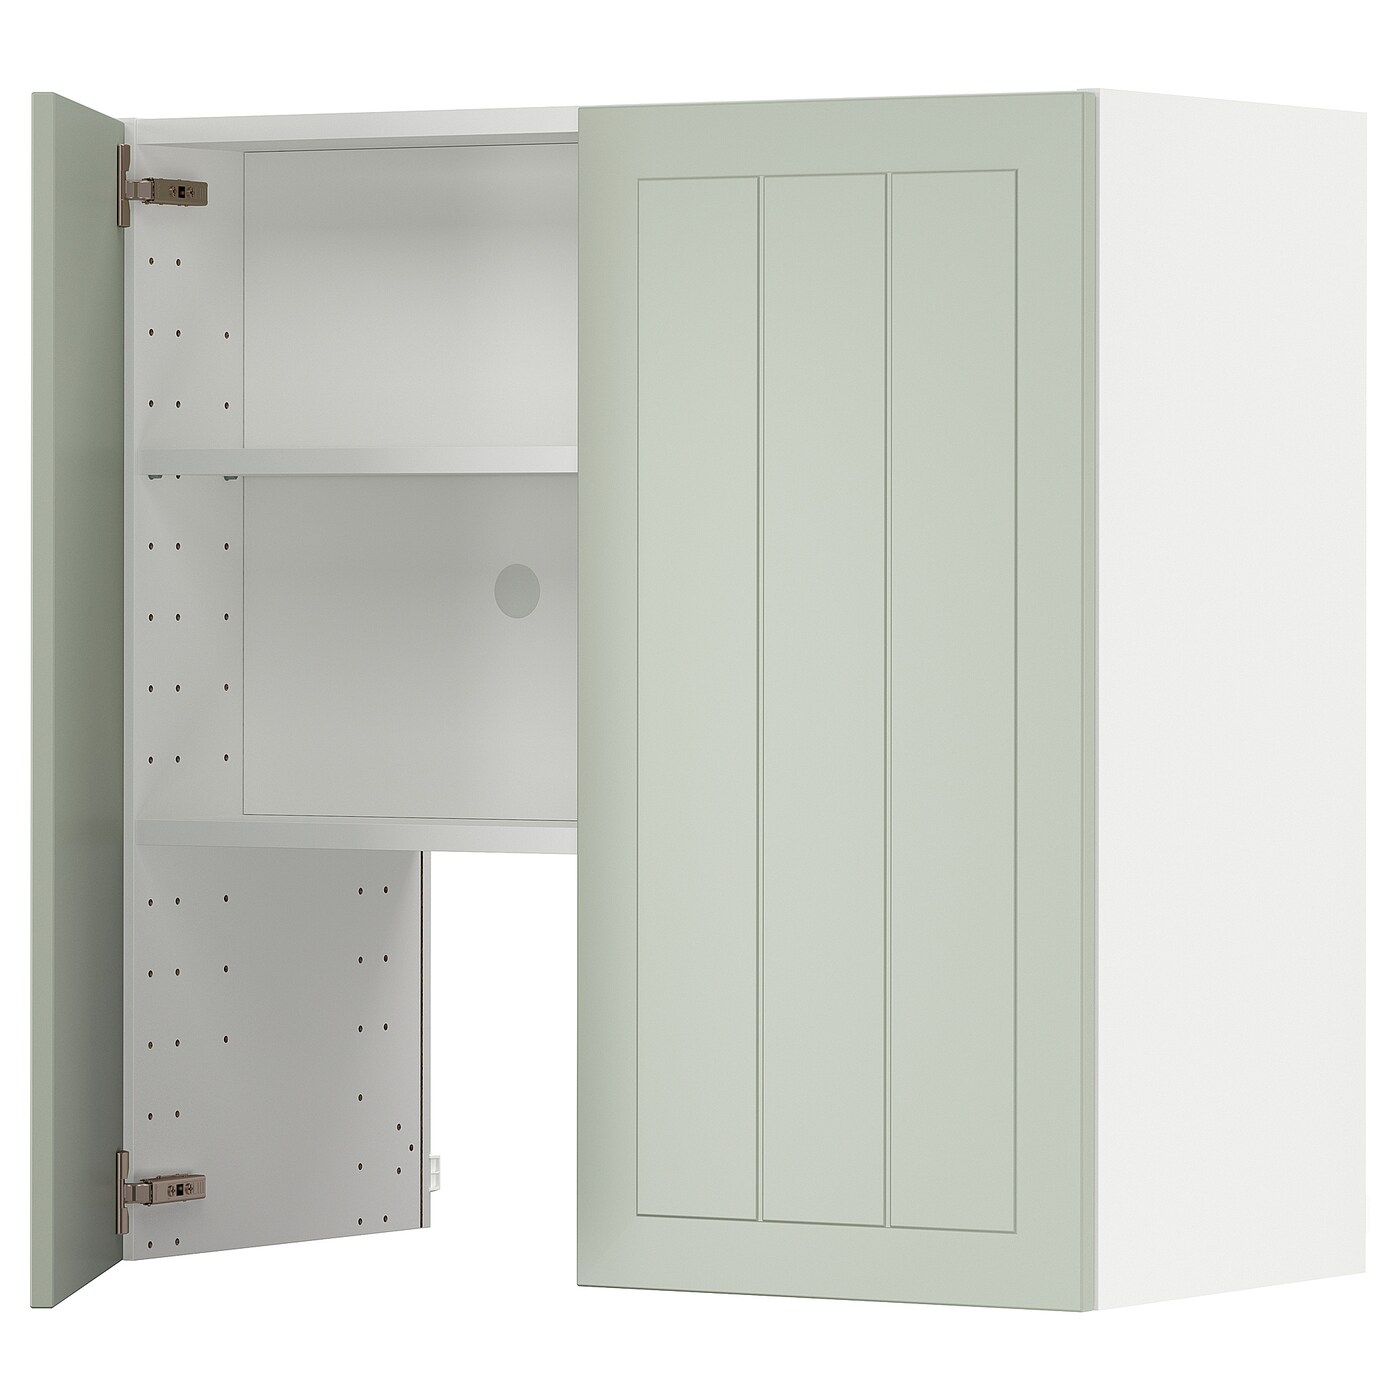 Навесной шкаф с полкой - METOD IKEA/ МЕТОД ИКЕА, 80х80 см, белый/зеленый